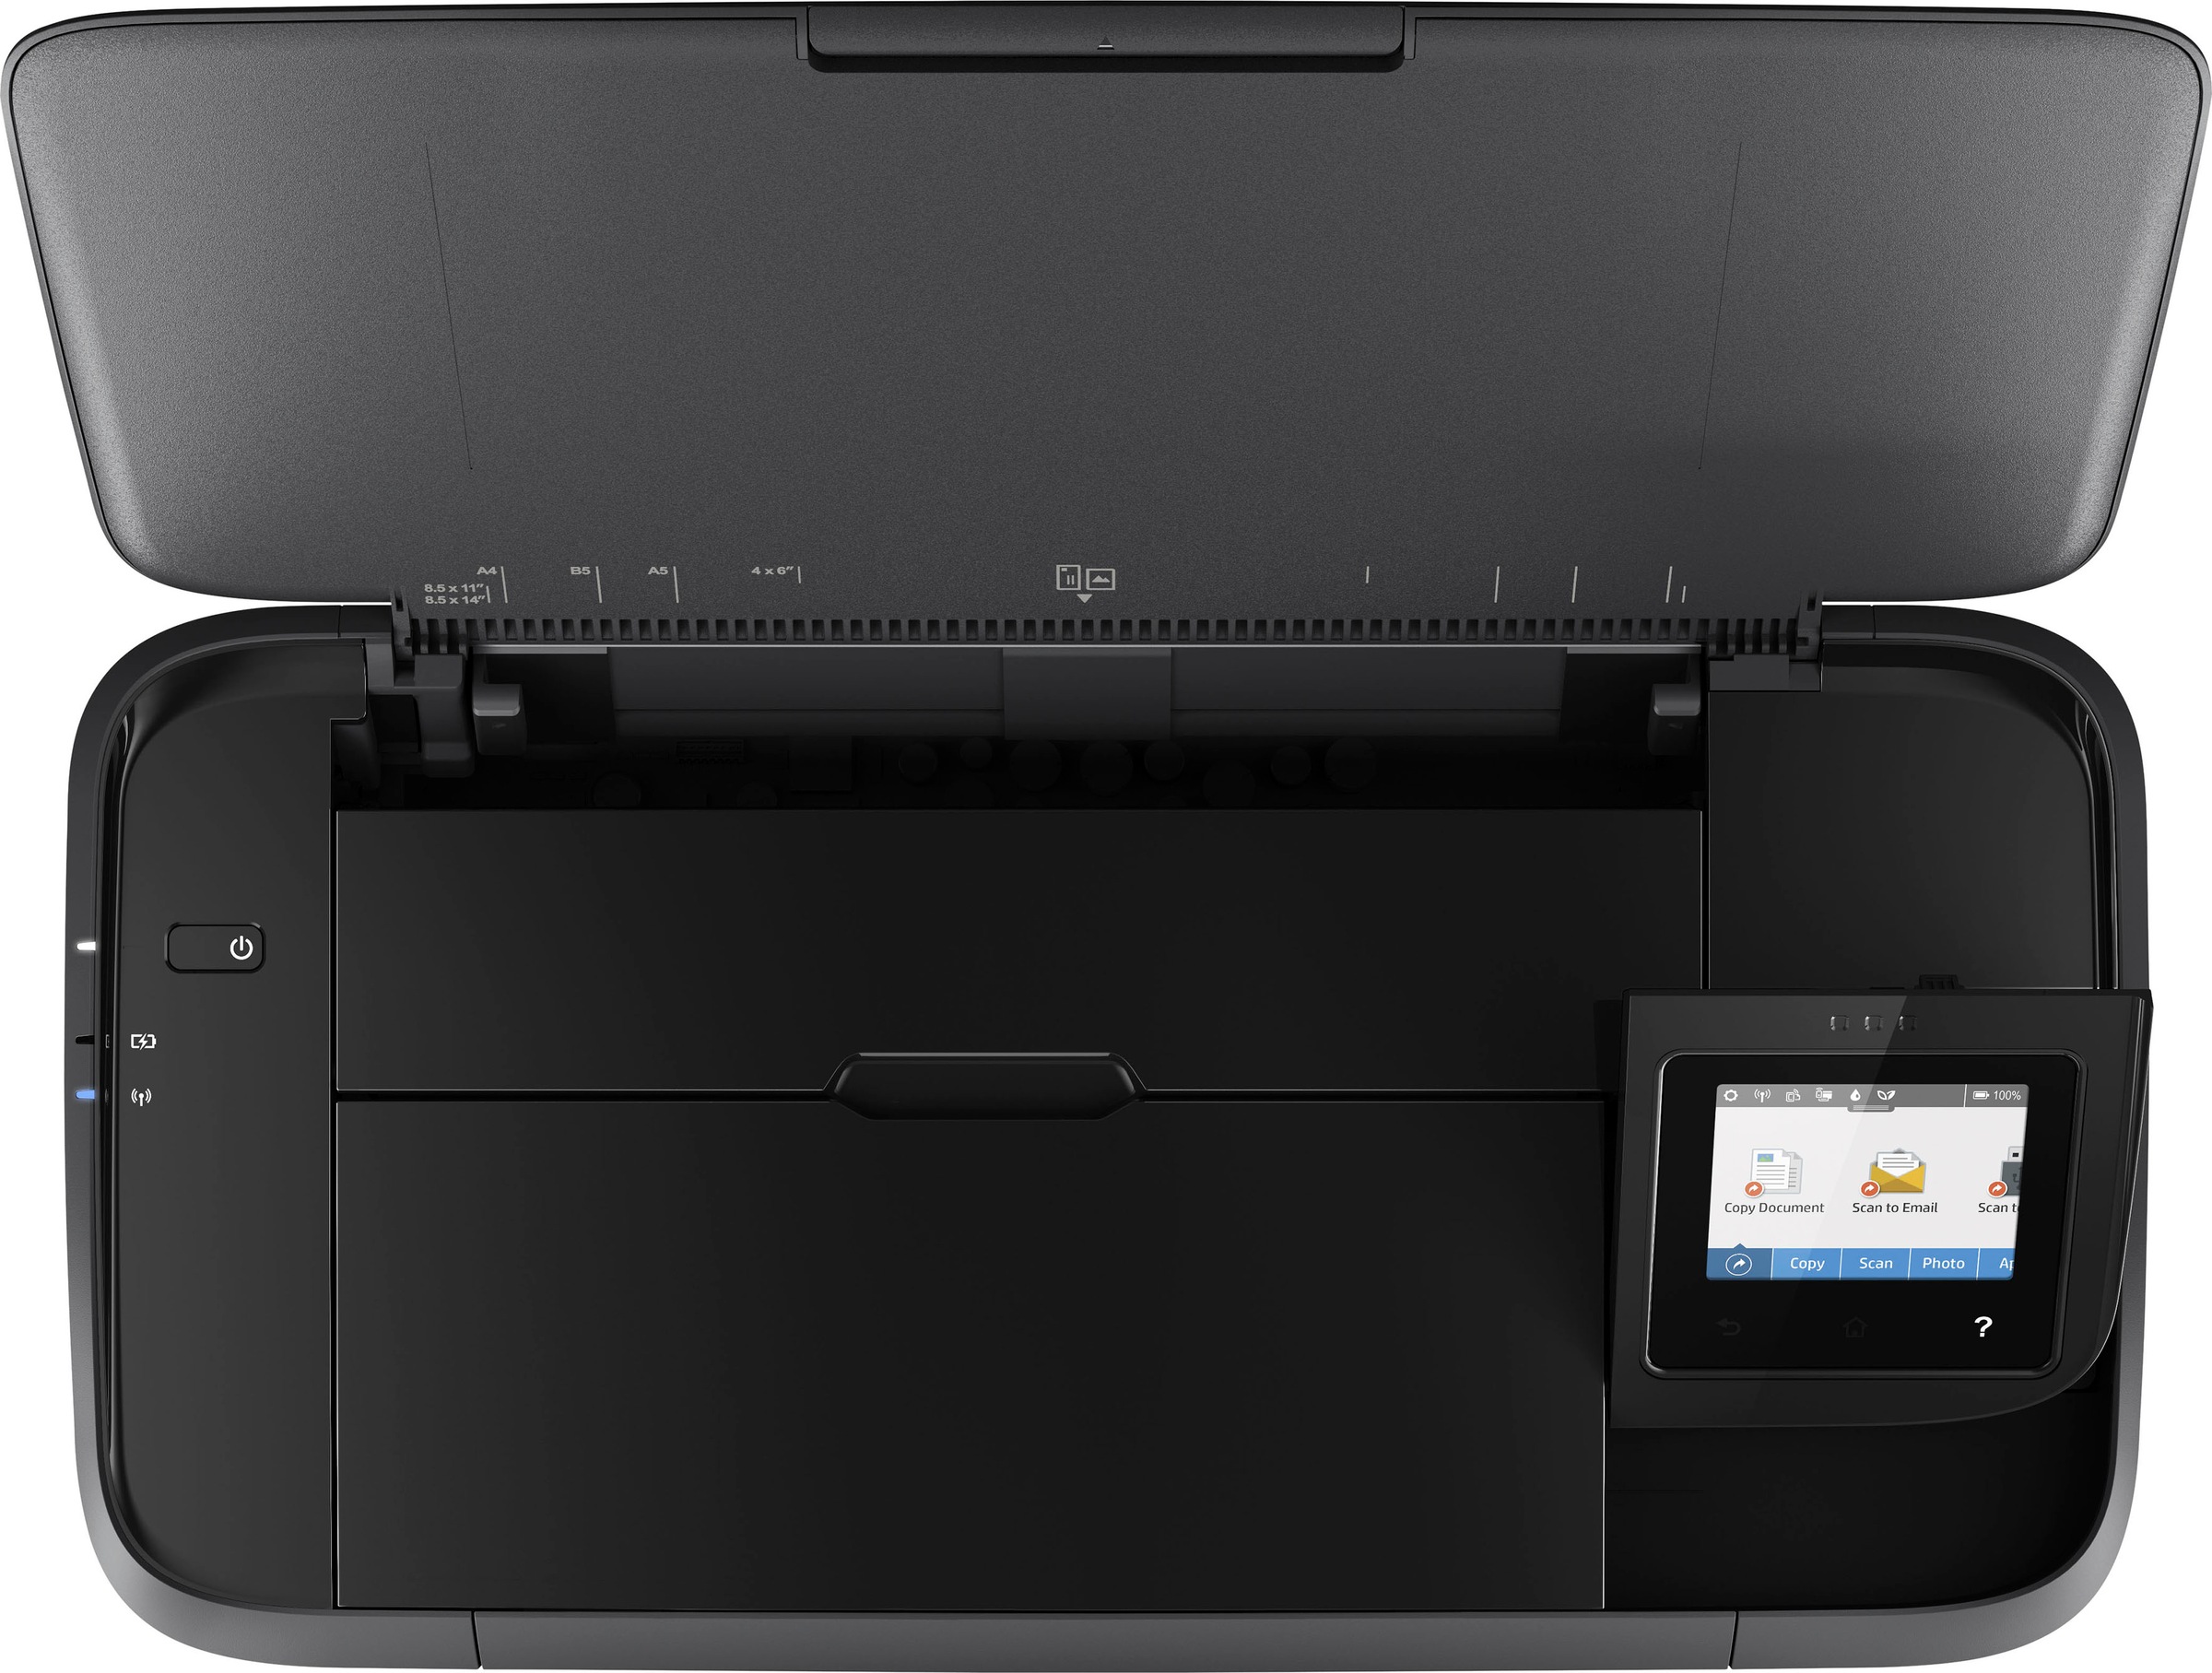 HP mobiler Drucker »Drucker OfficeJet 250 Mobiler All-in-One-Drucker«